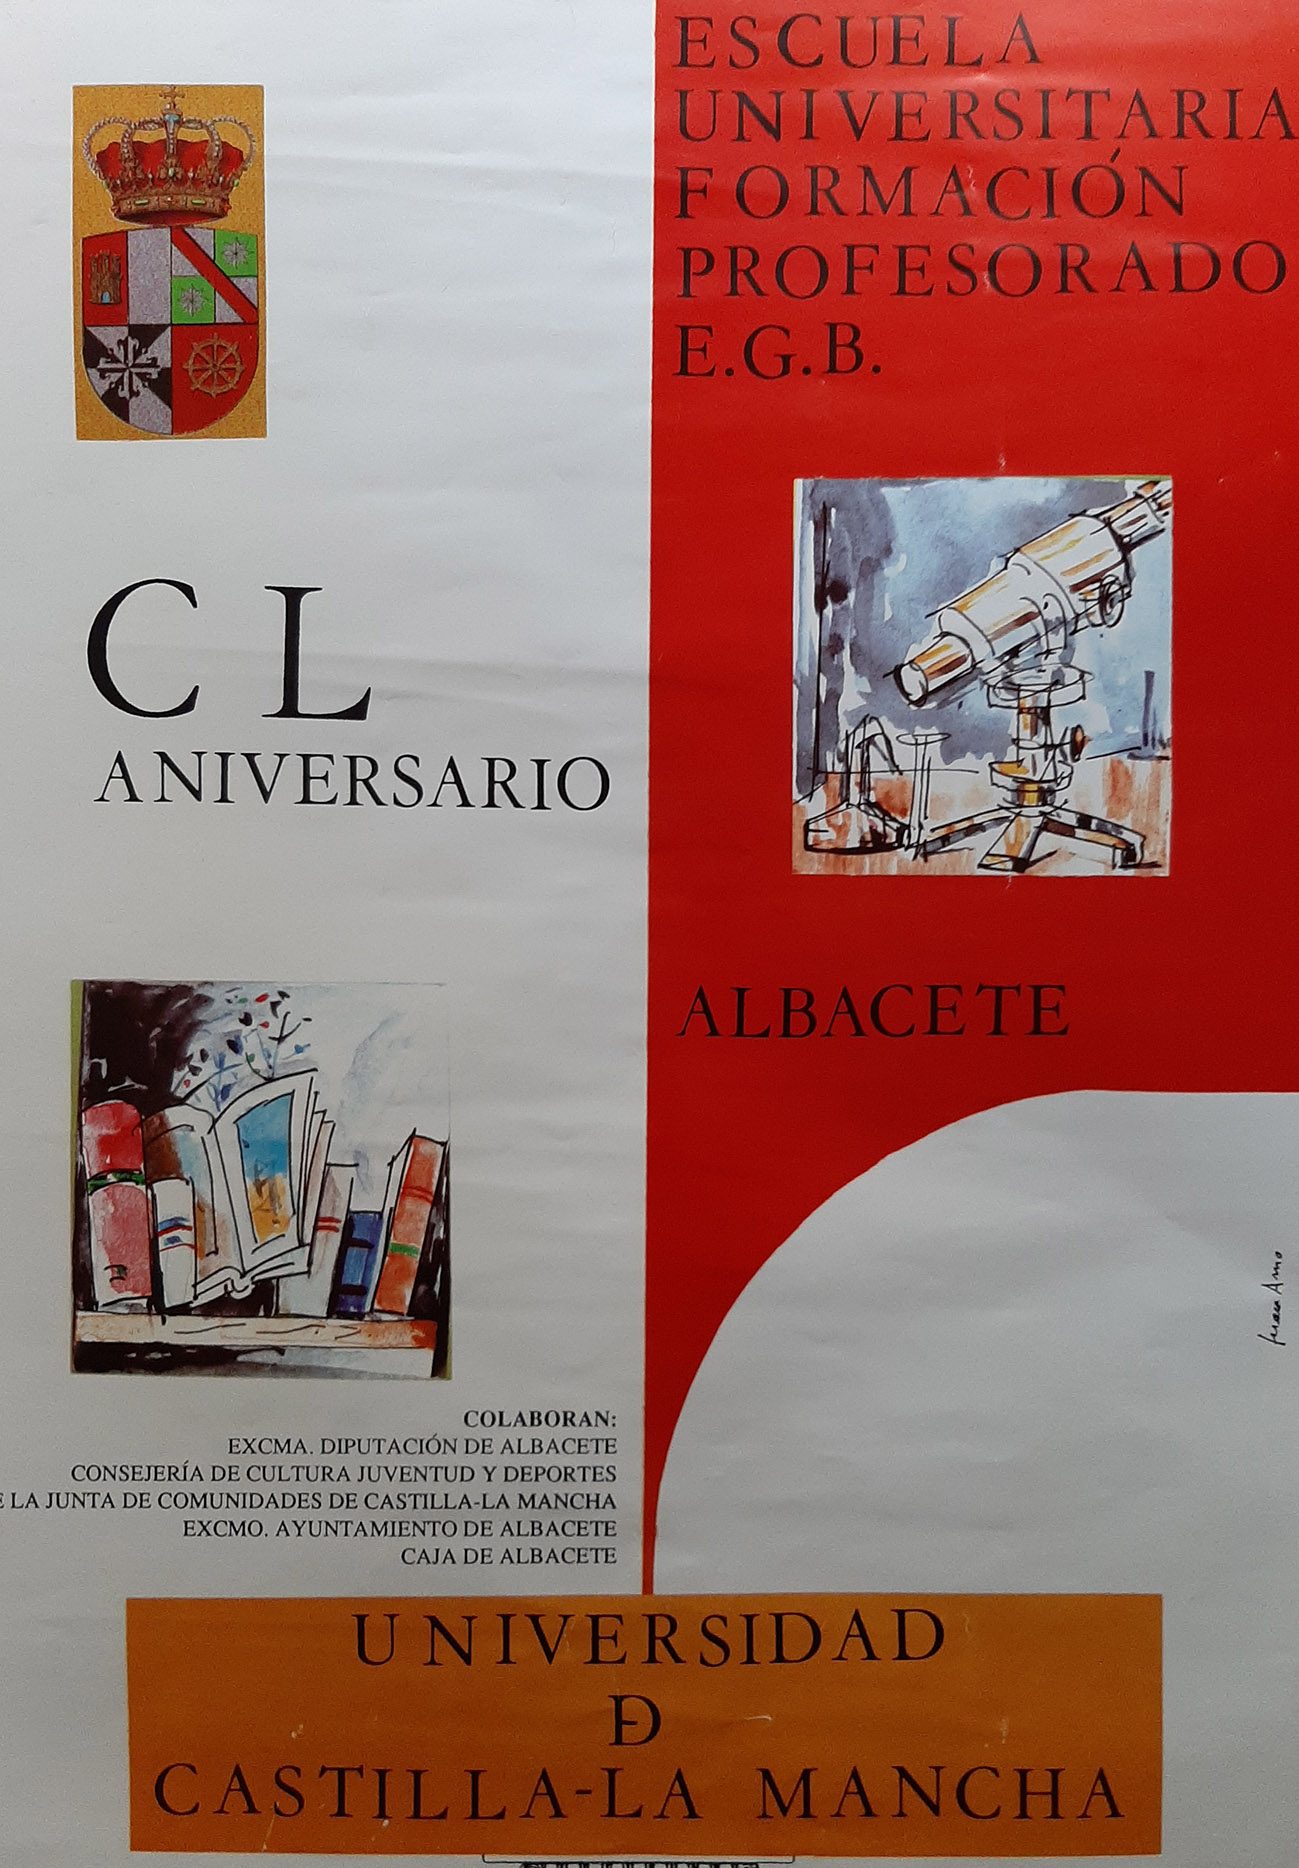 Juan Amo. (1992). CARTEL. 150 Aniversario Escuela Universitaria Formación Profesorado Albacete. Universidad de Castilla-La Mancha.